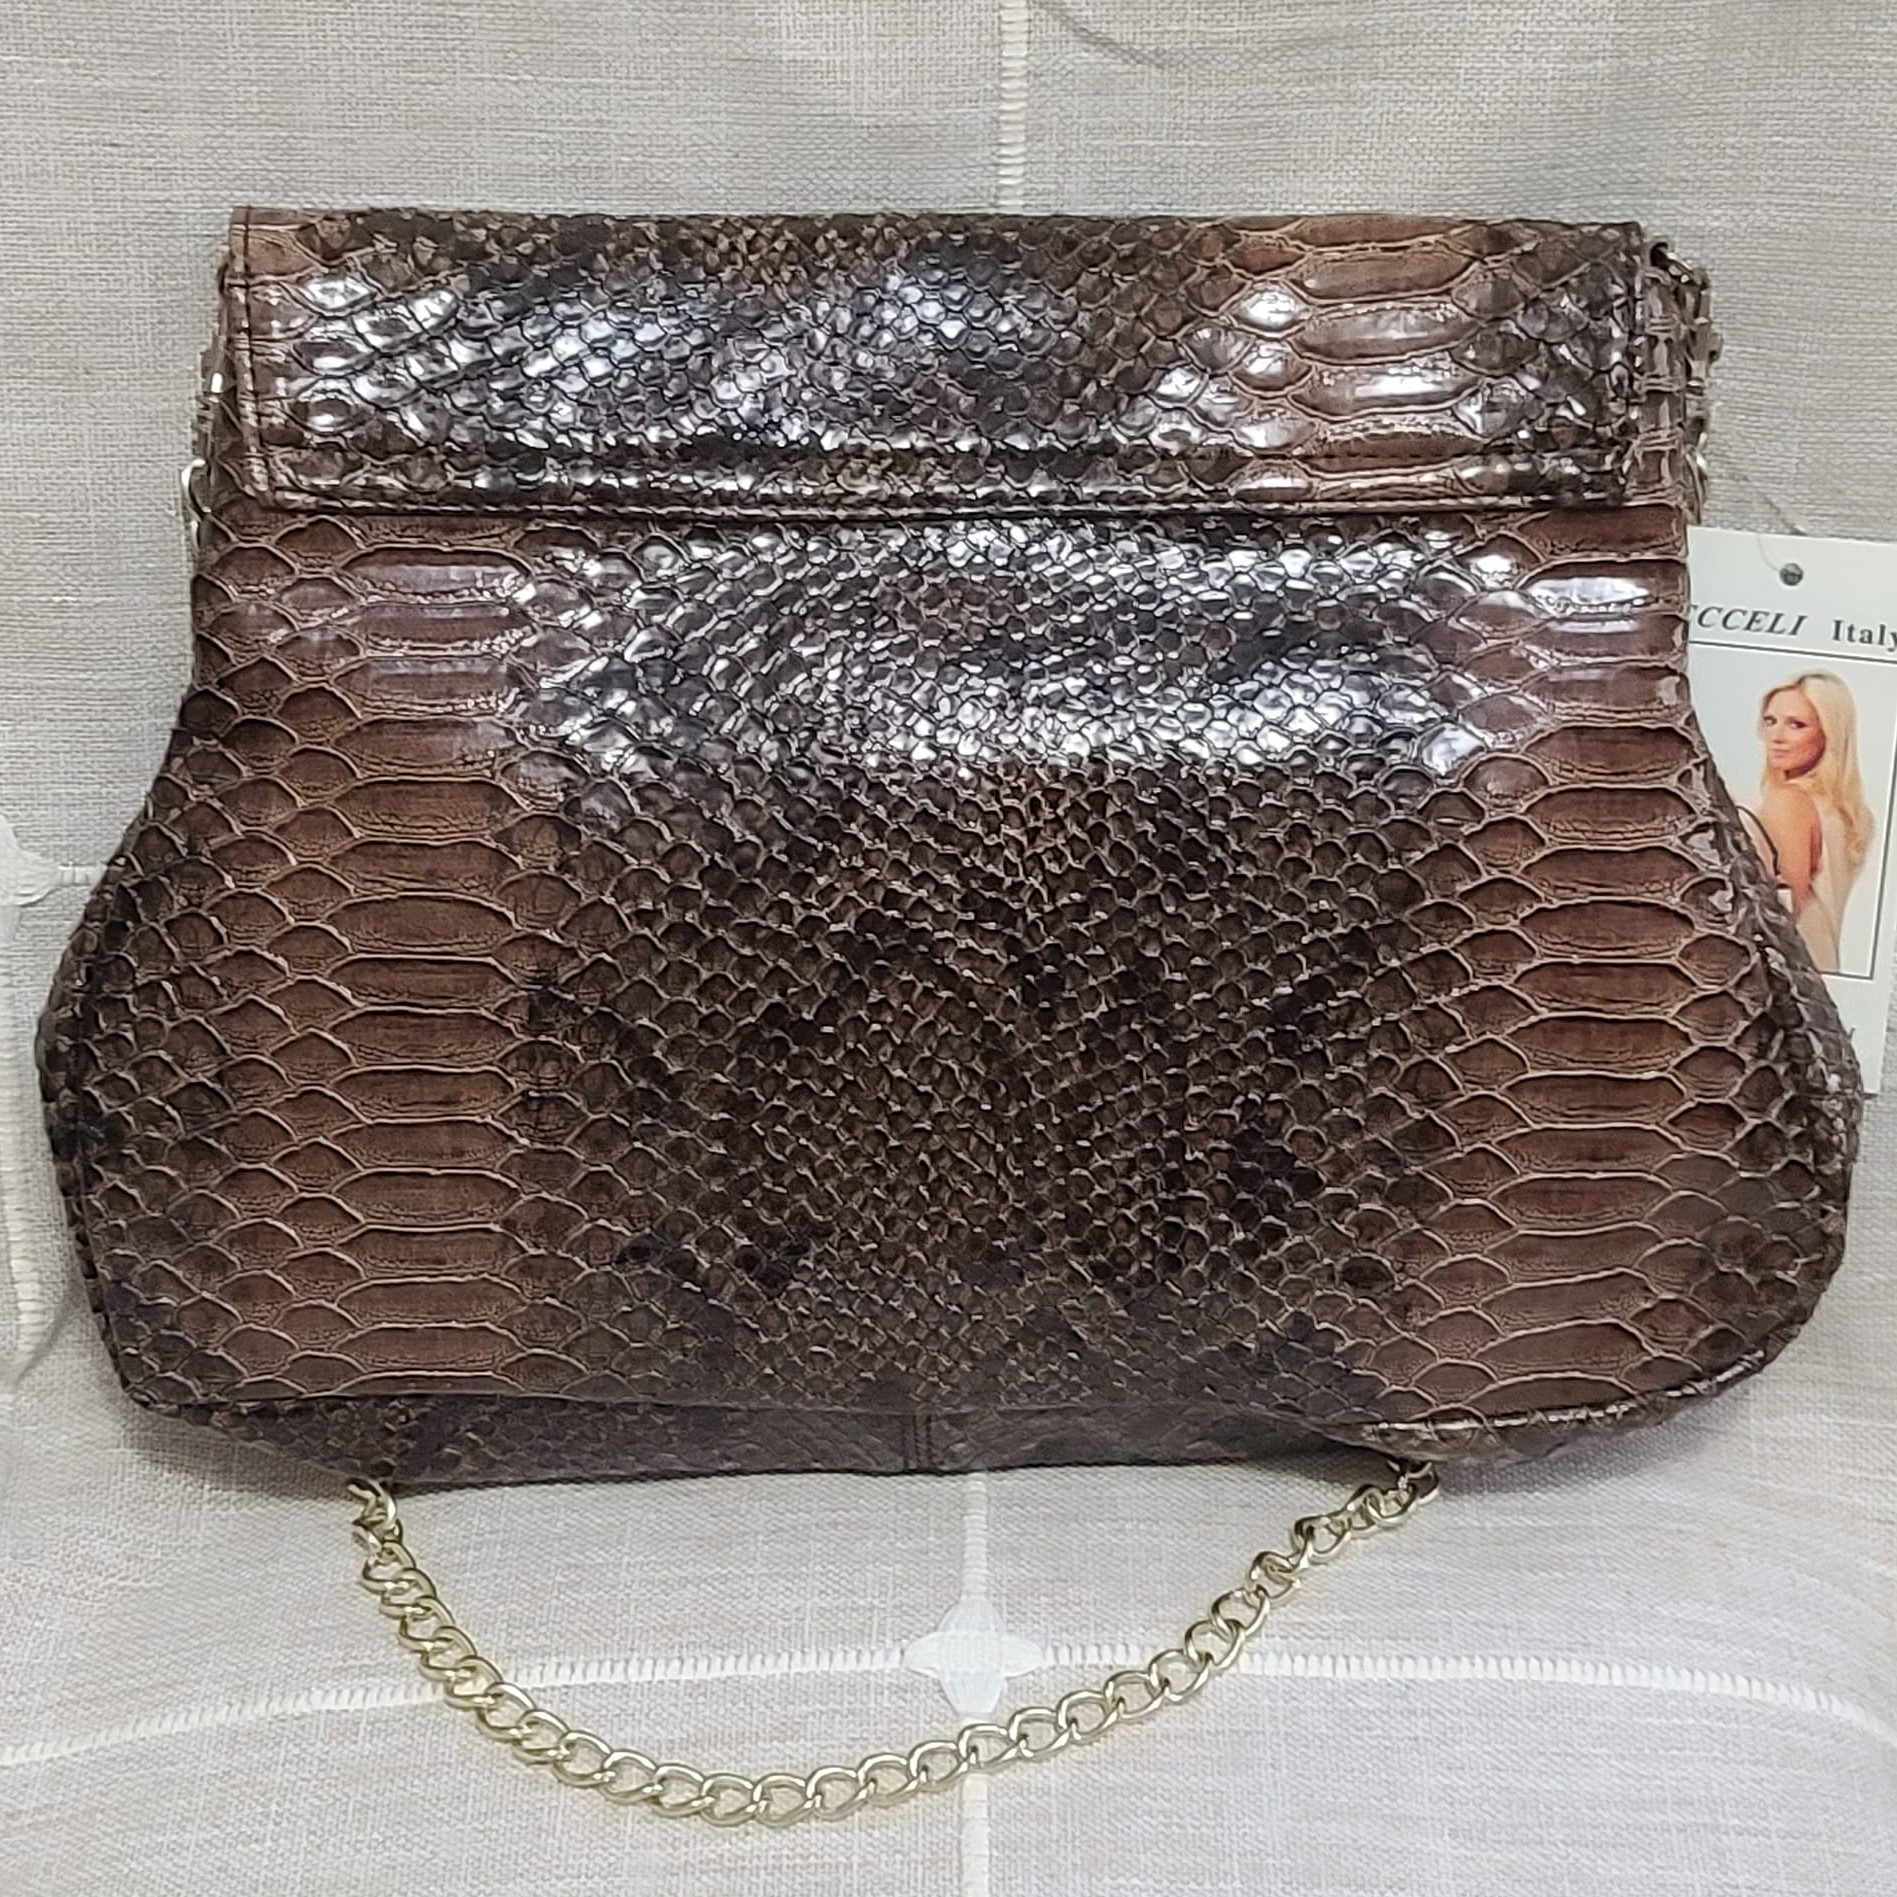 Ronella Lucci Vecceli Snake Embossed Handbag w/ Chain